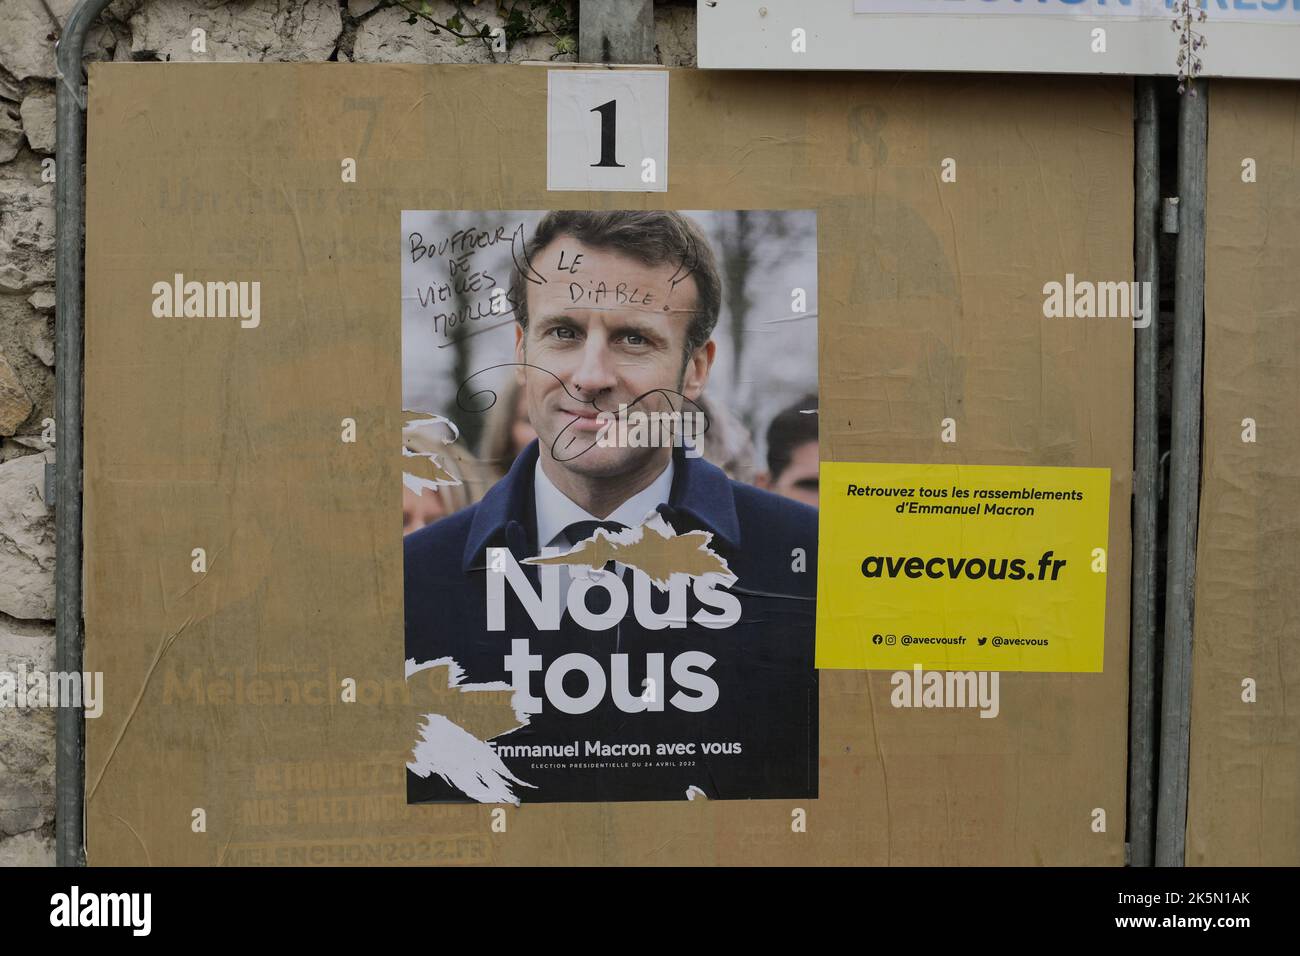 Menton, France - 21 avril 2022 : affiches électorales avec Emmanuel Macron et Marine le Pen avant le deuxième tour des élections présidentielles en France. Banque D'Images